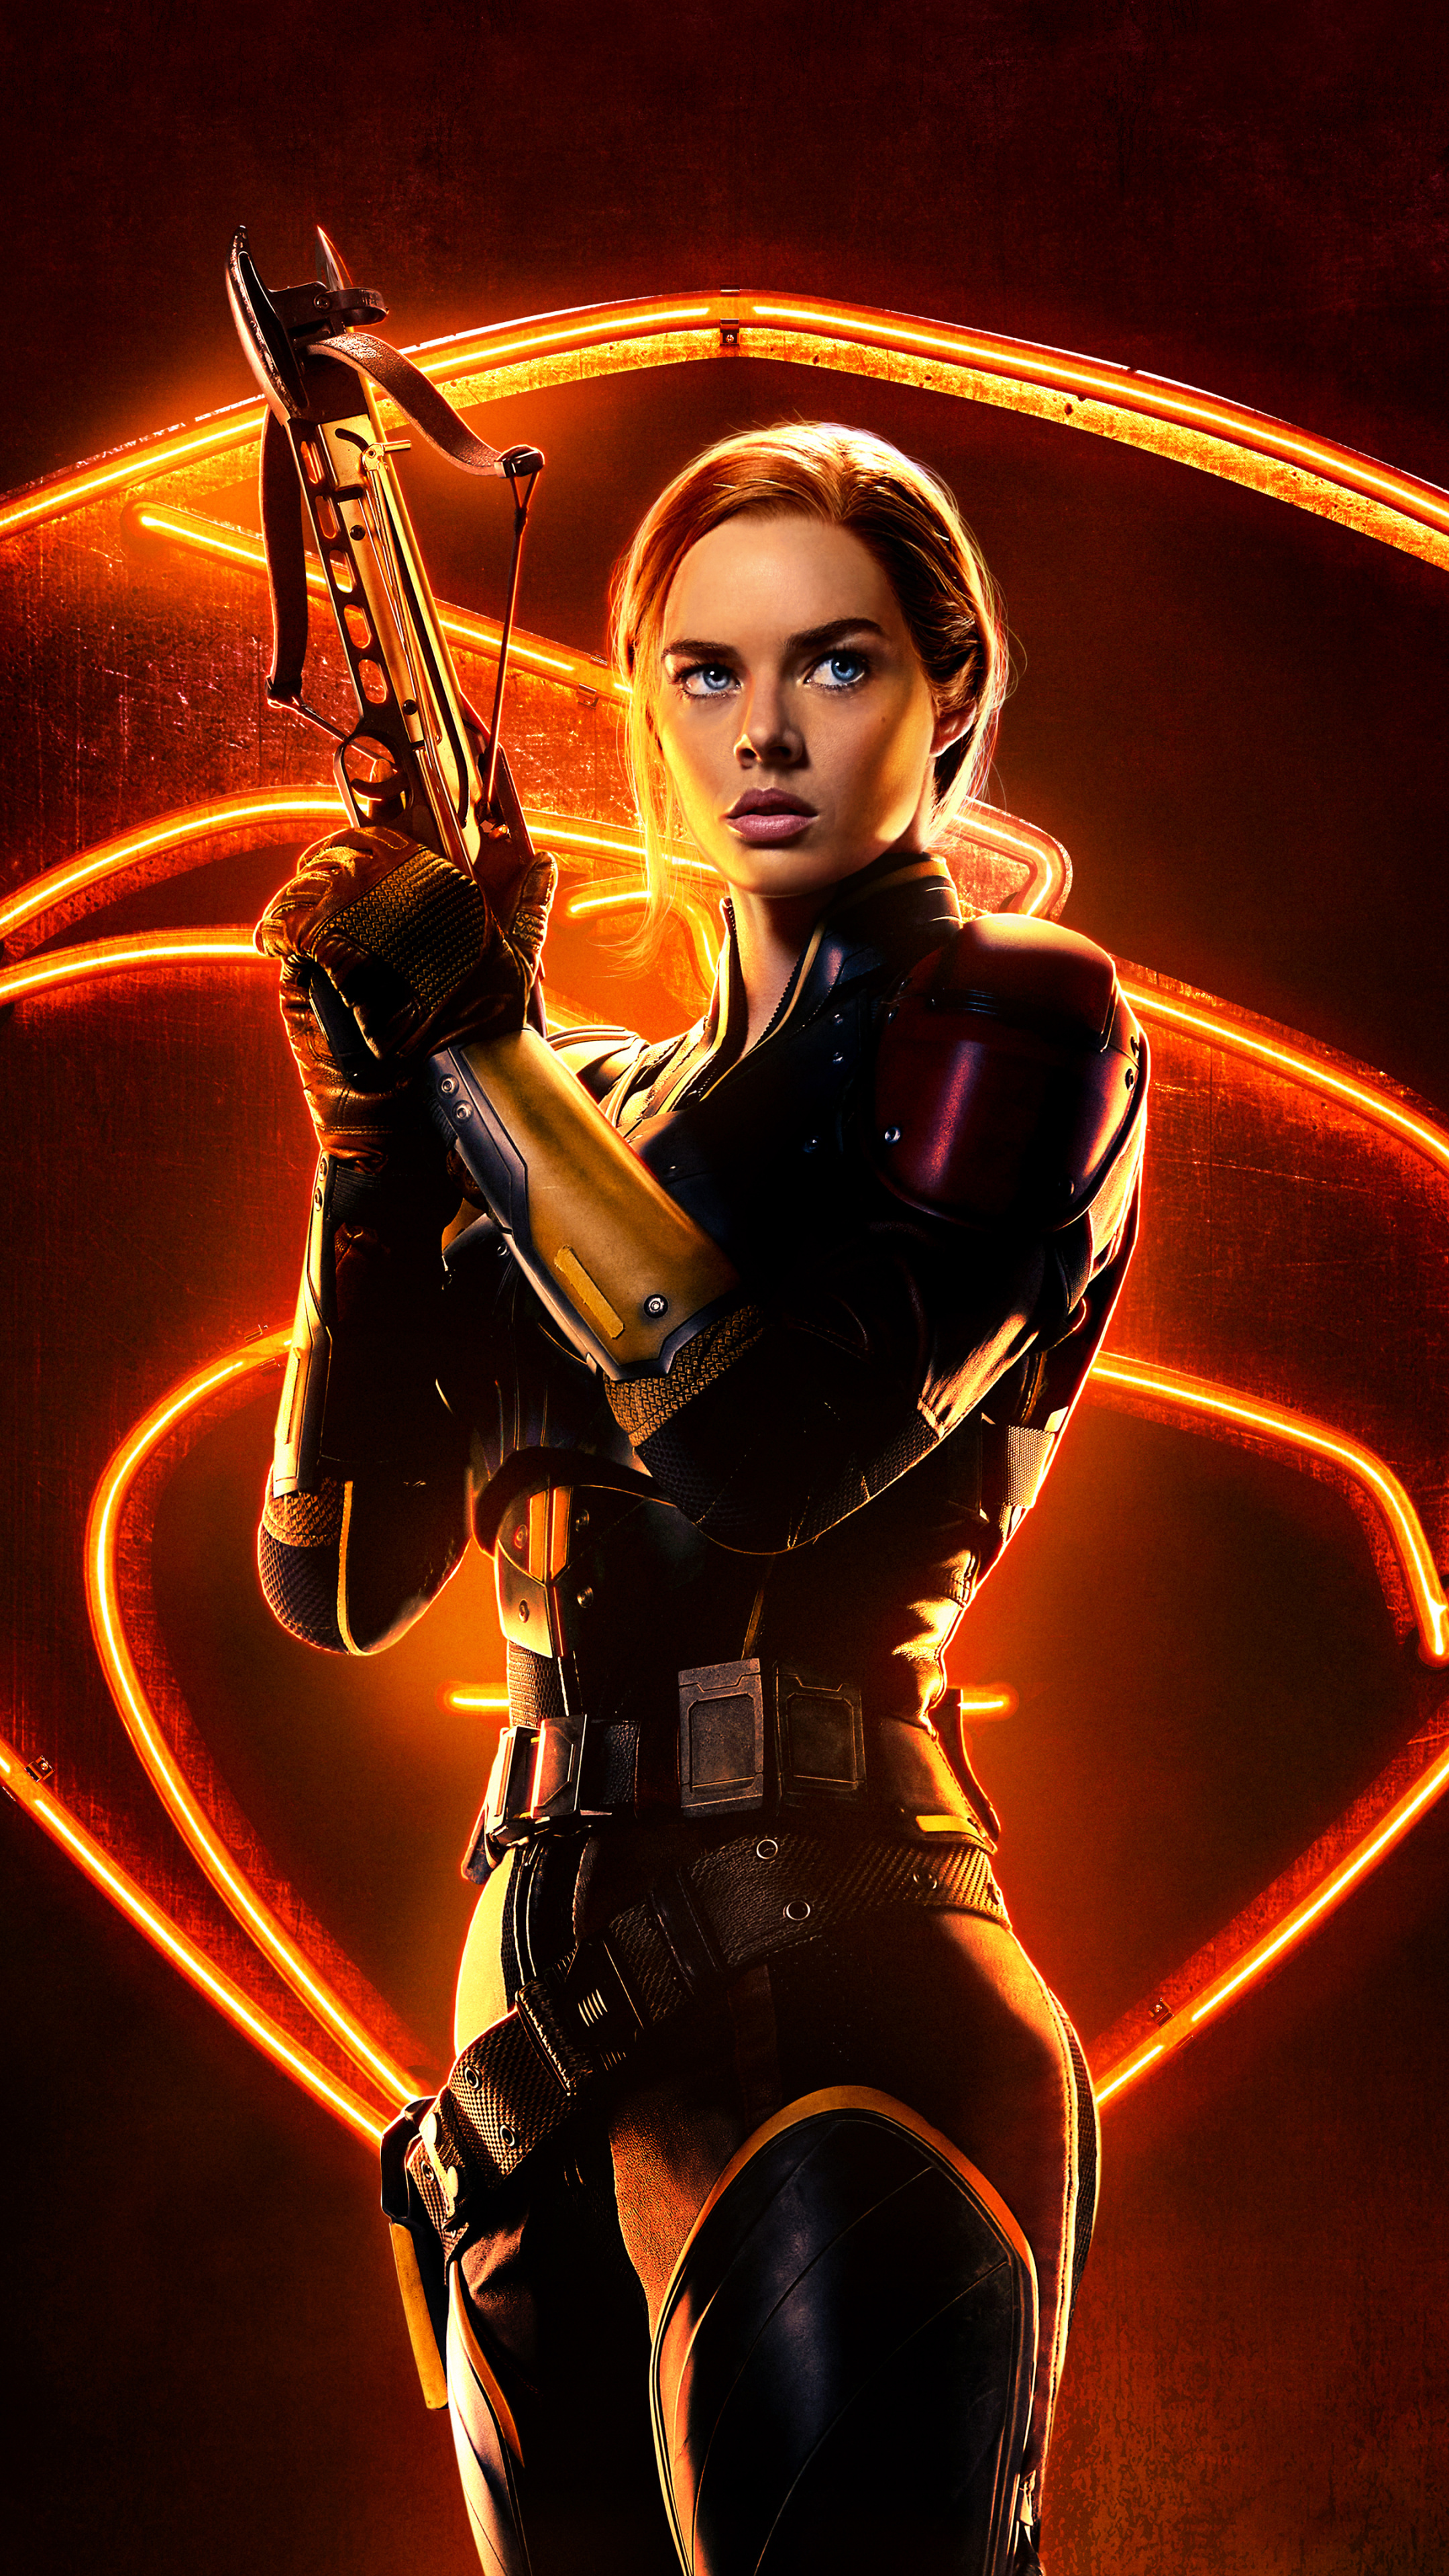 Snake Eyes: G.I. Joe Origins, Samara Weaving as Major O'Hara, Scarlett. 2160x3840 4K Wallpaper.